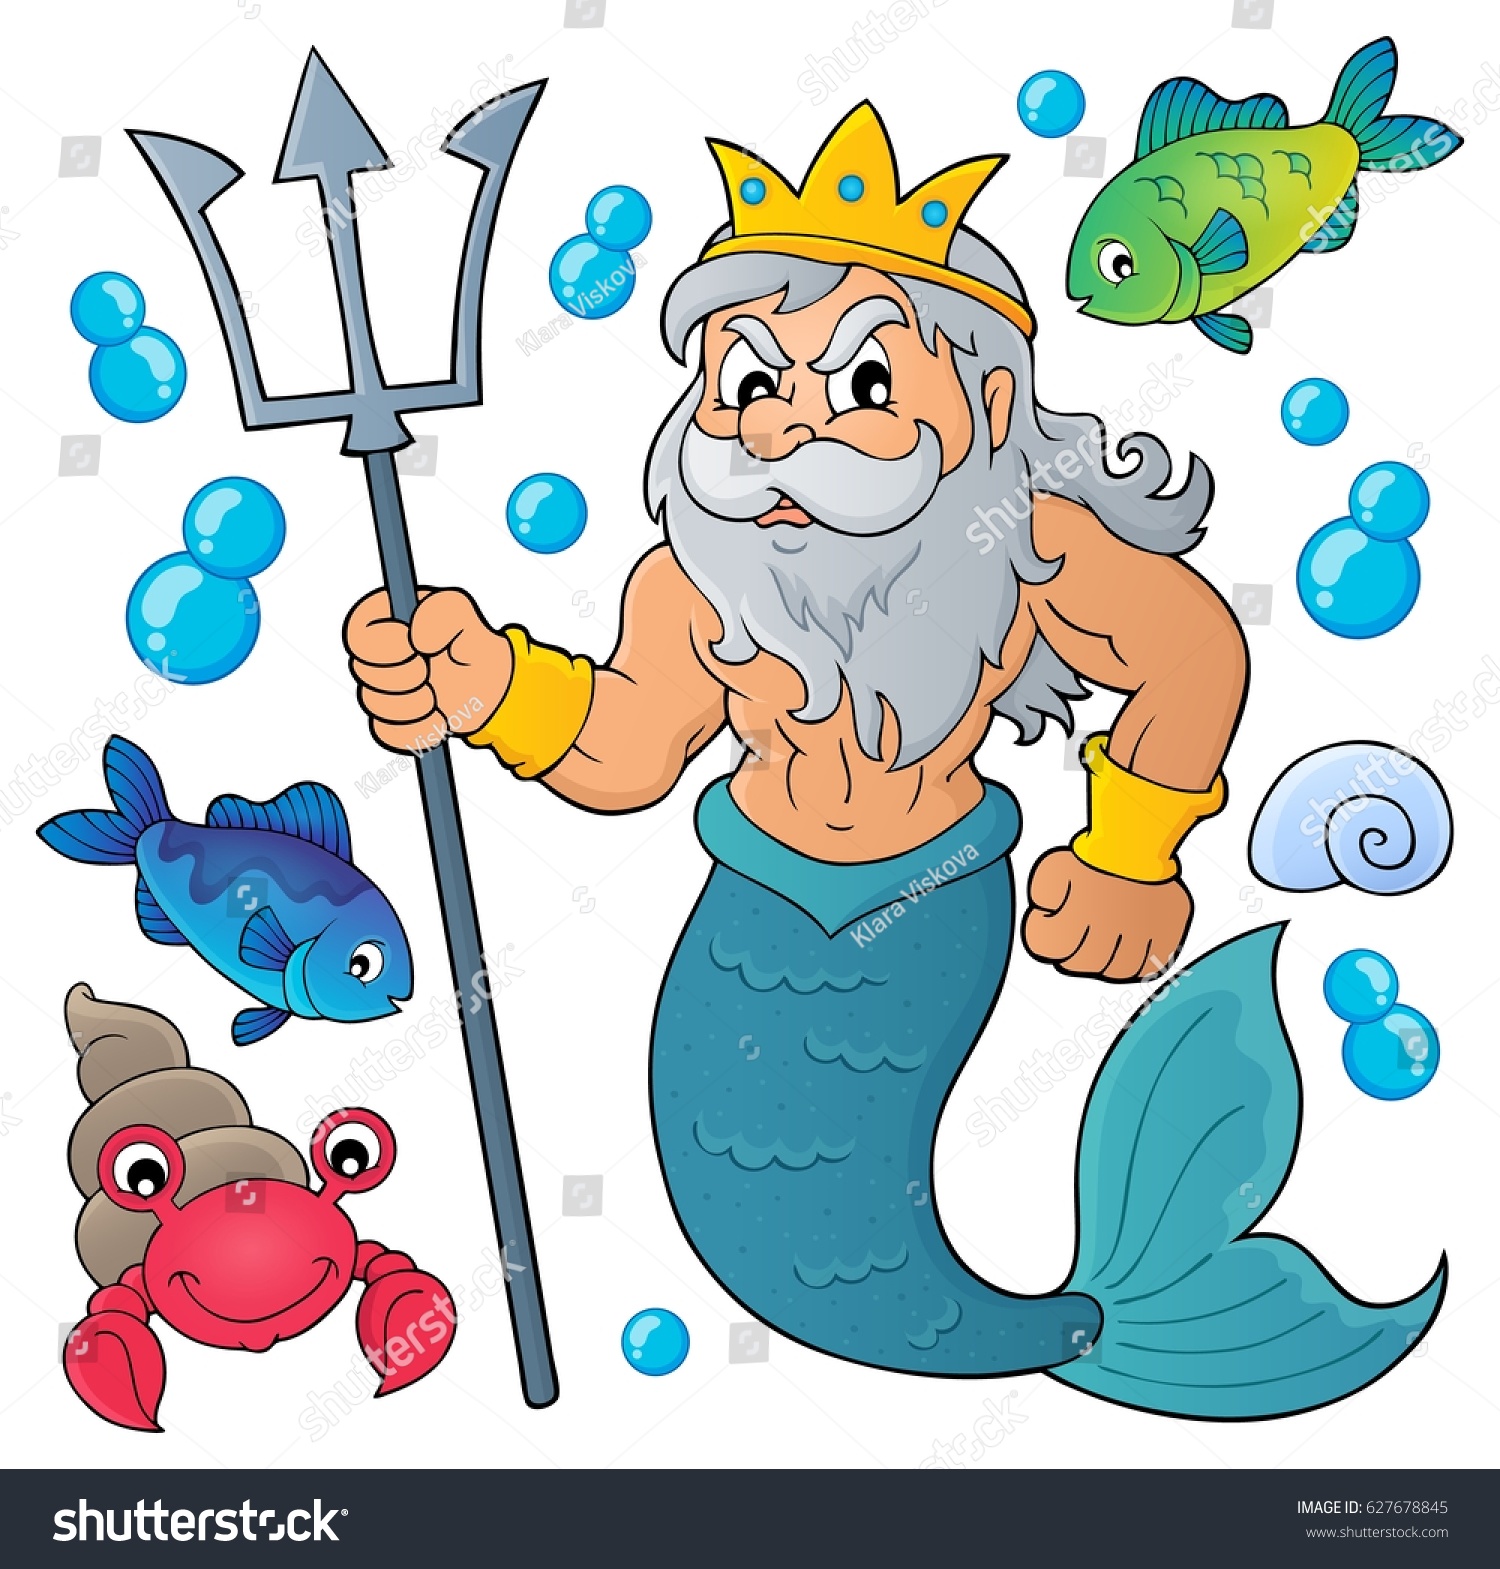 Нептун царь морей